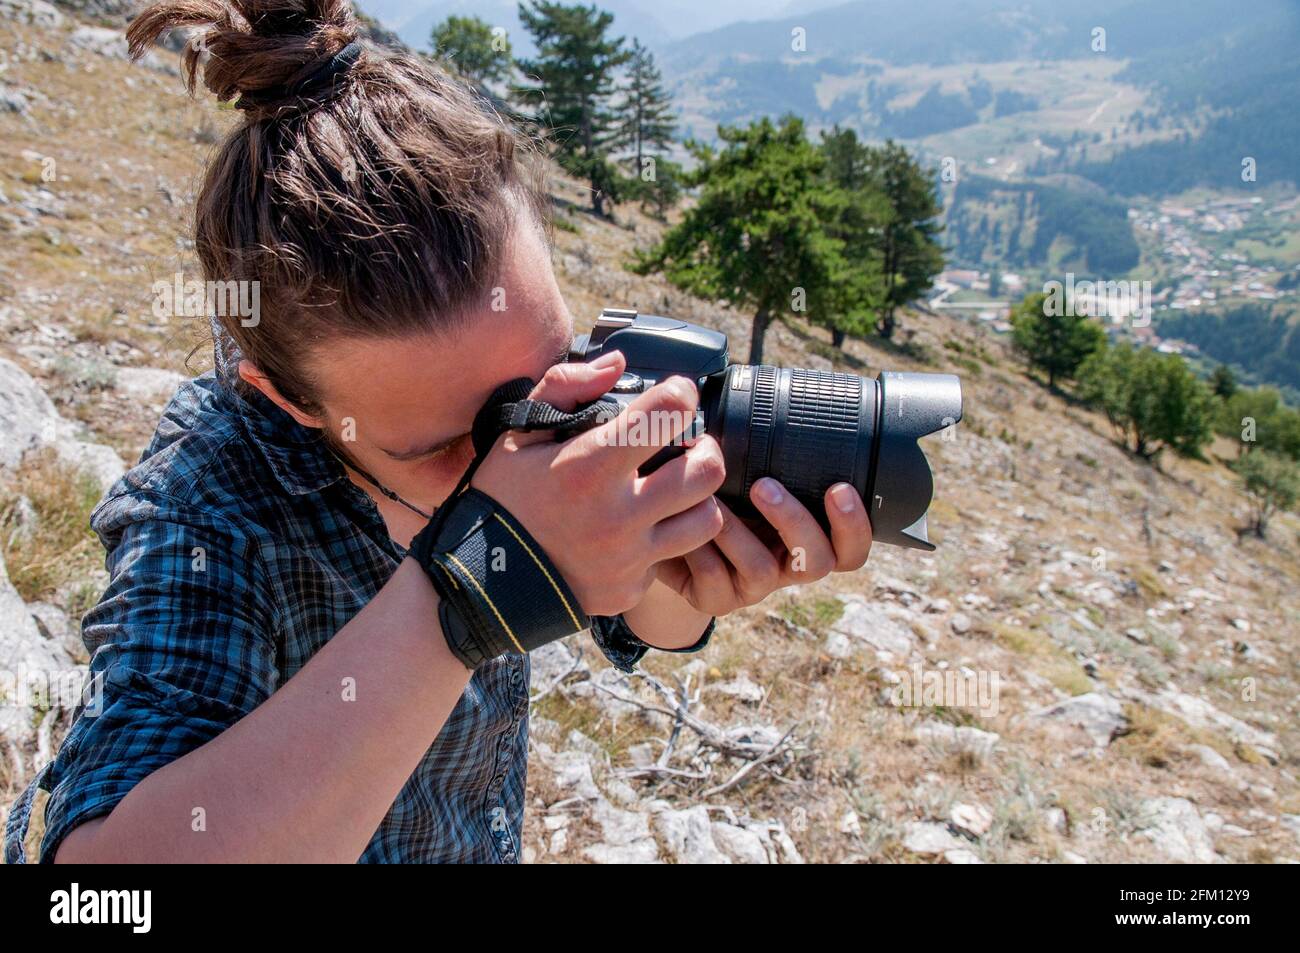 Una giovane donna che scatta una foto su una montagna. Stile di vita blogging / vlogging su vita sana, natura e all'aperto. Foto Stock